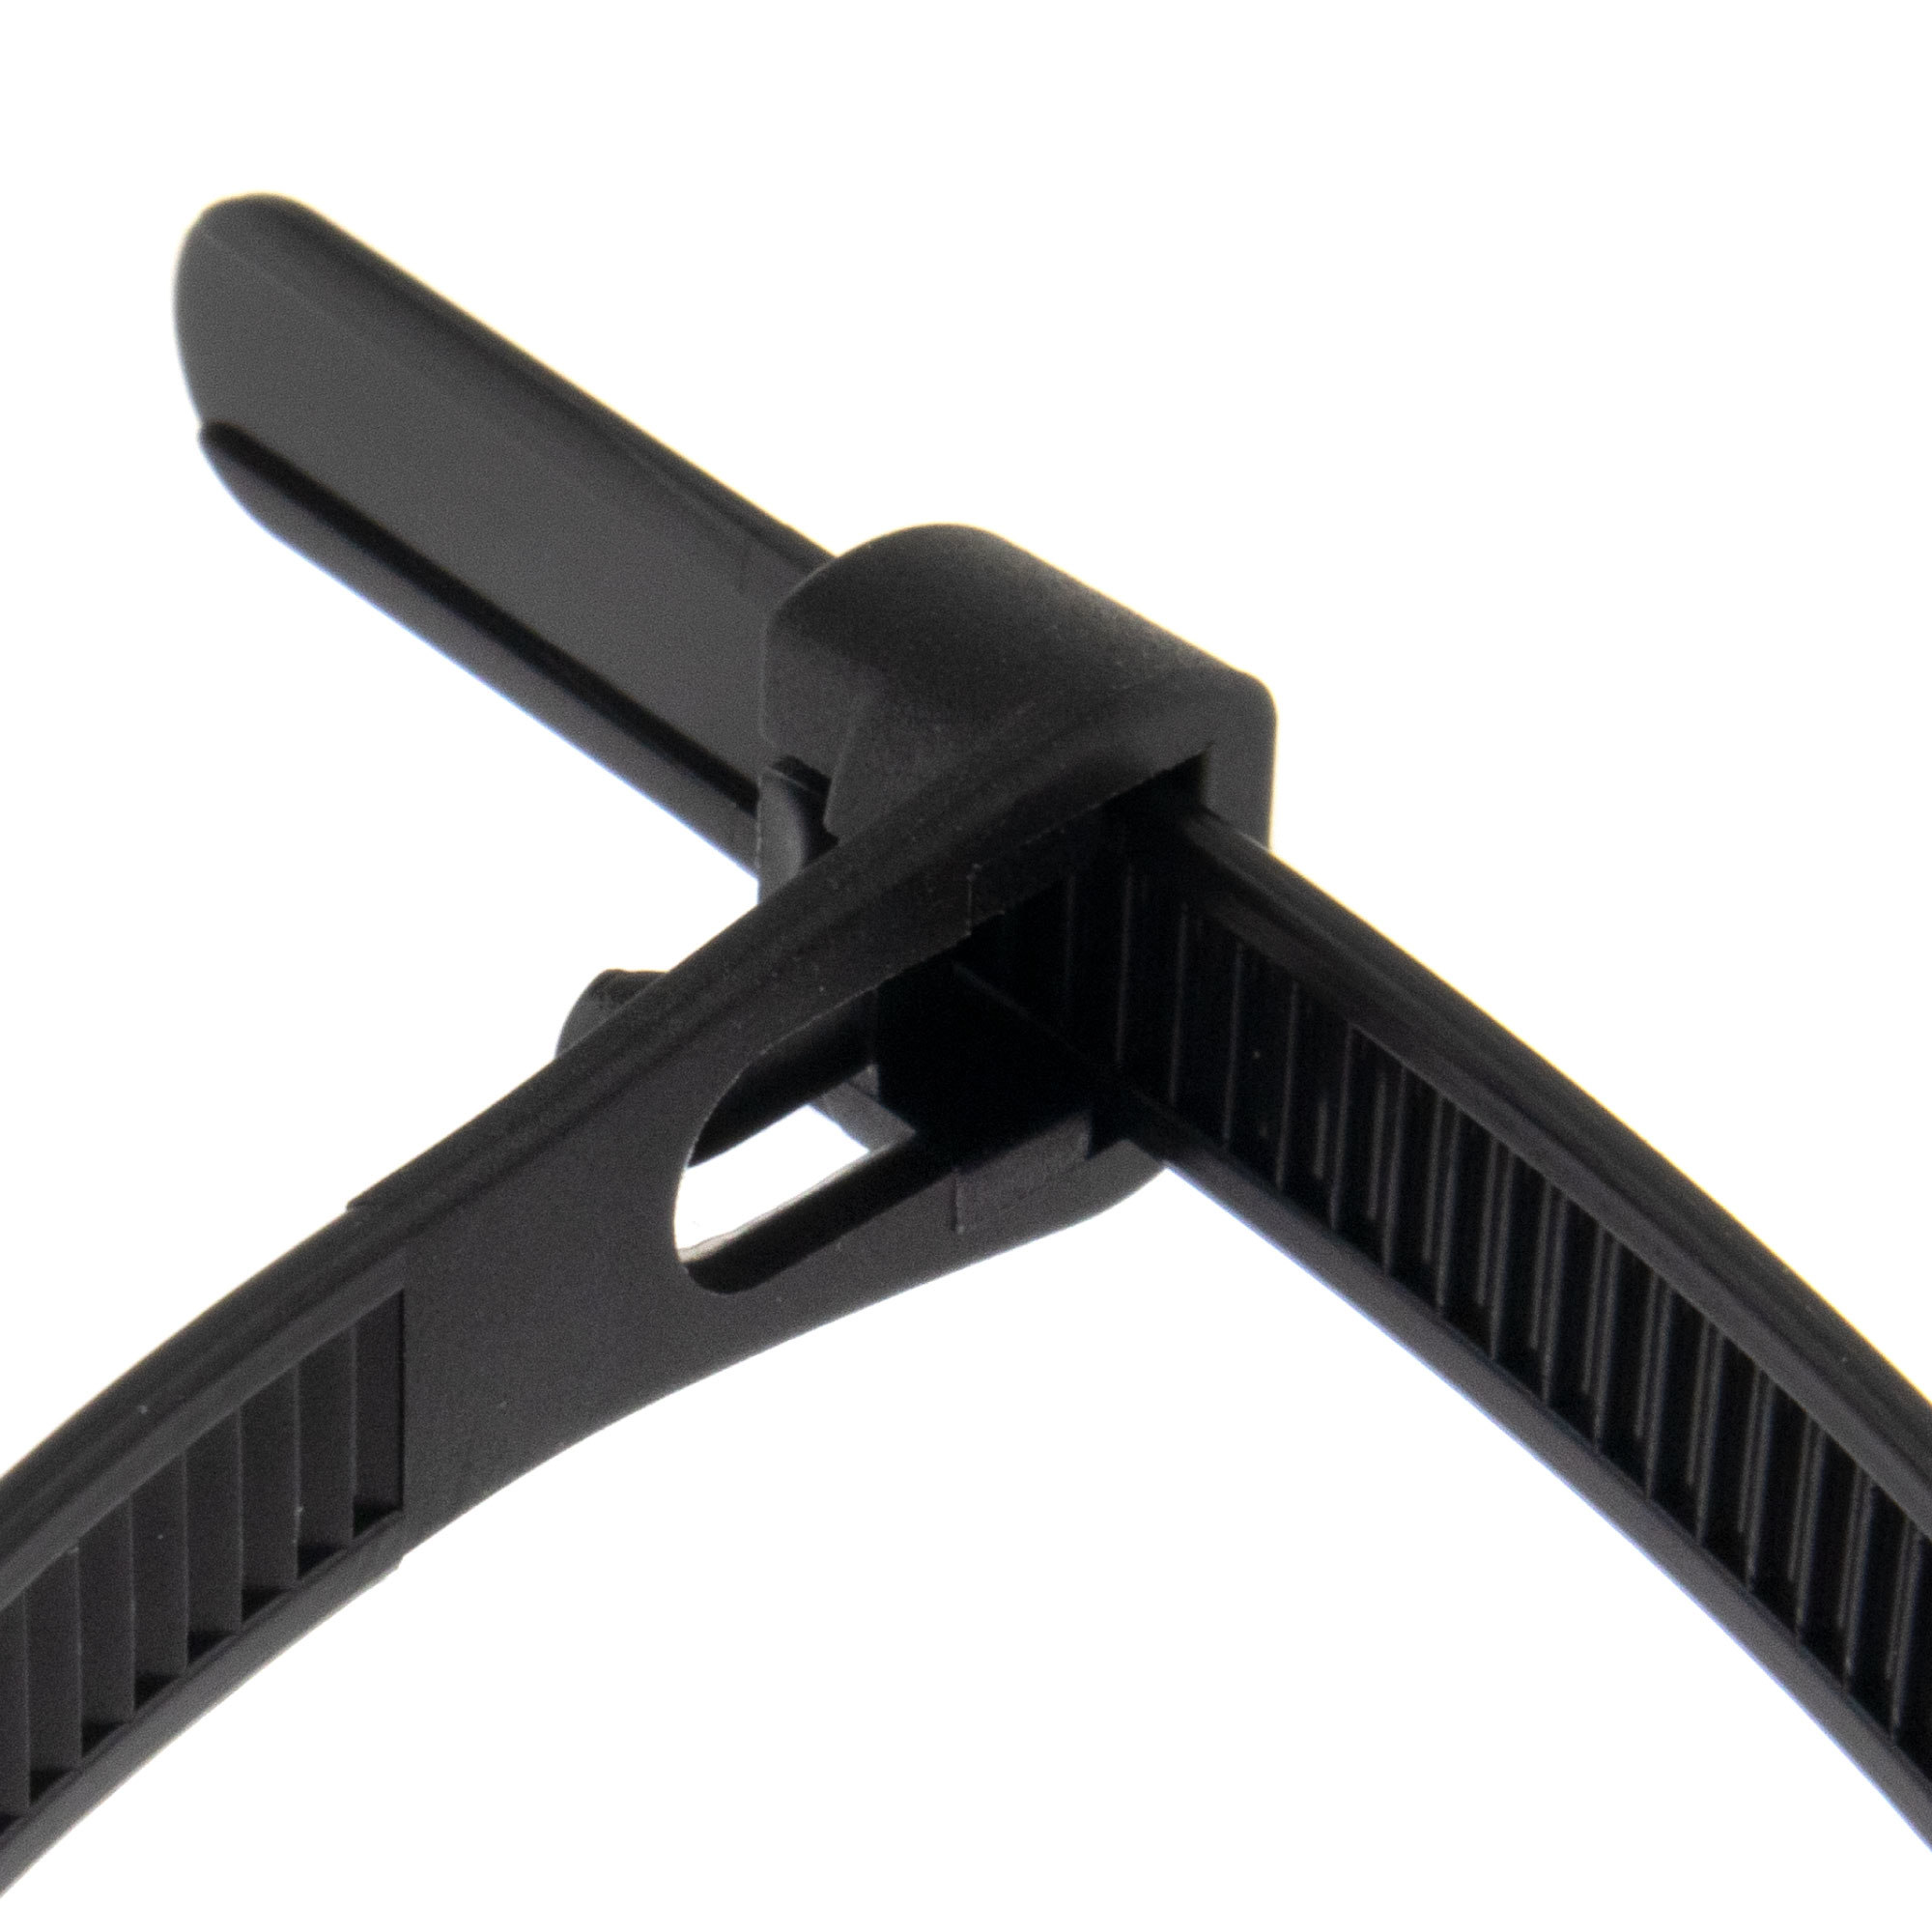 Cable tie releasable 200 x 4,8mm, black, 100PCS